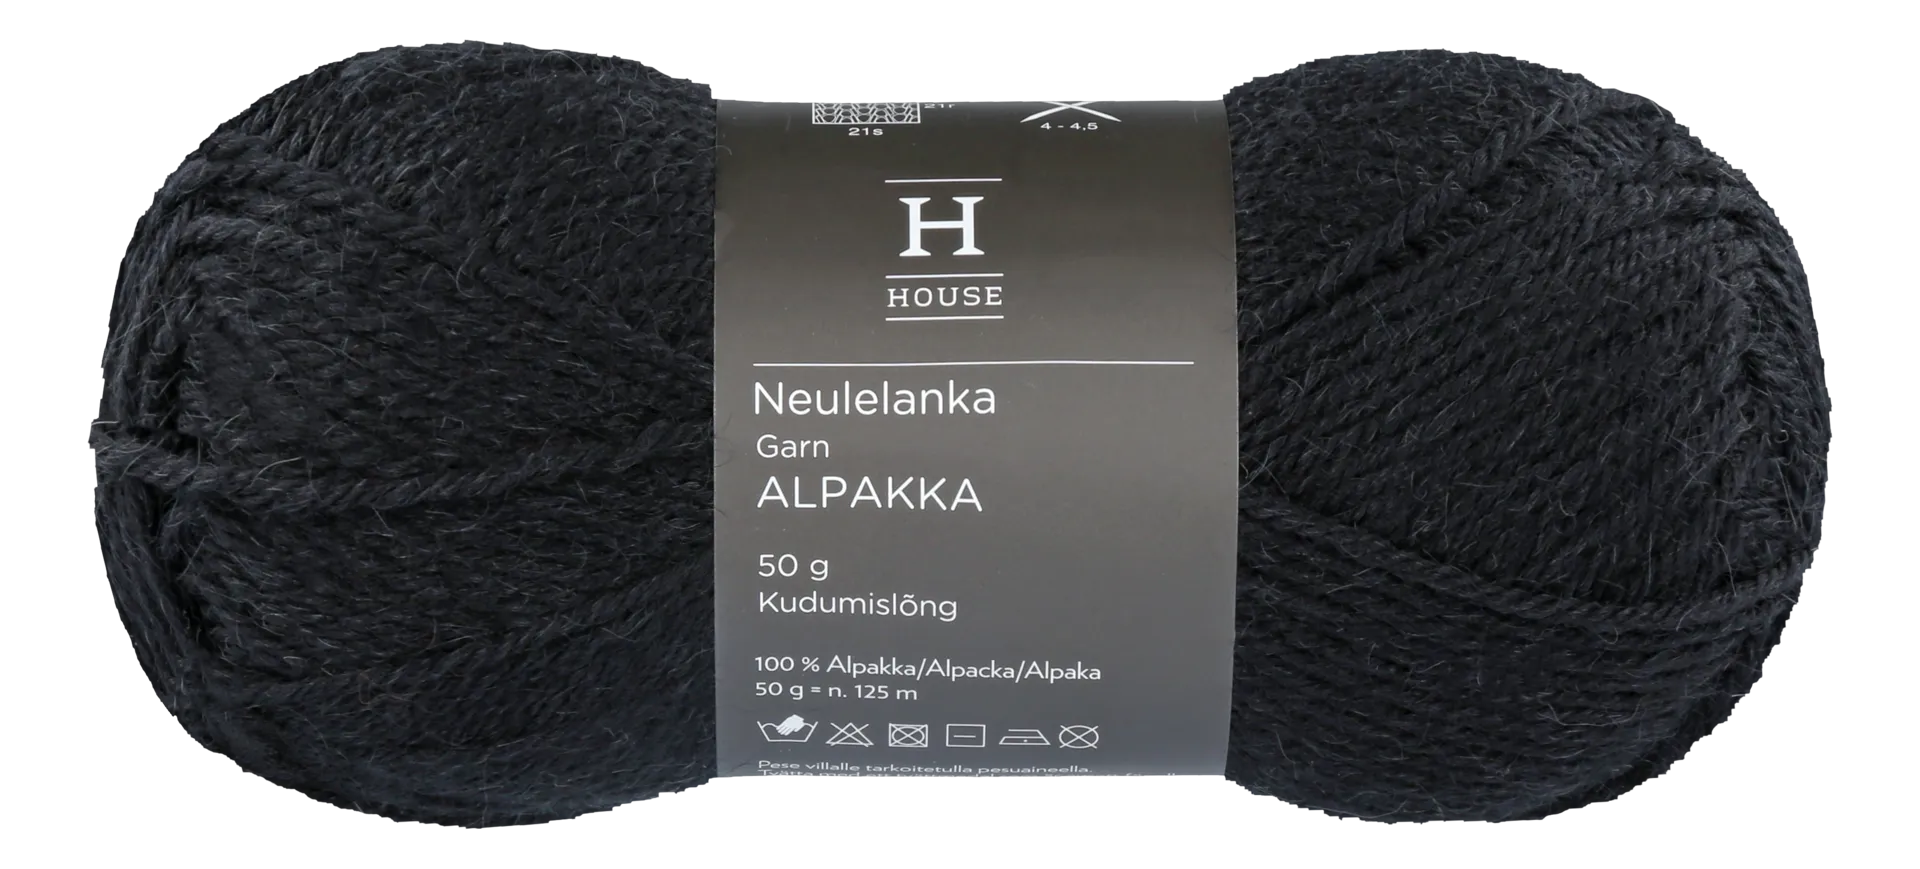 House neulelanka Alpakka 710234 50 g Black 217